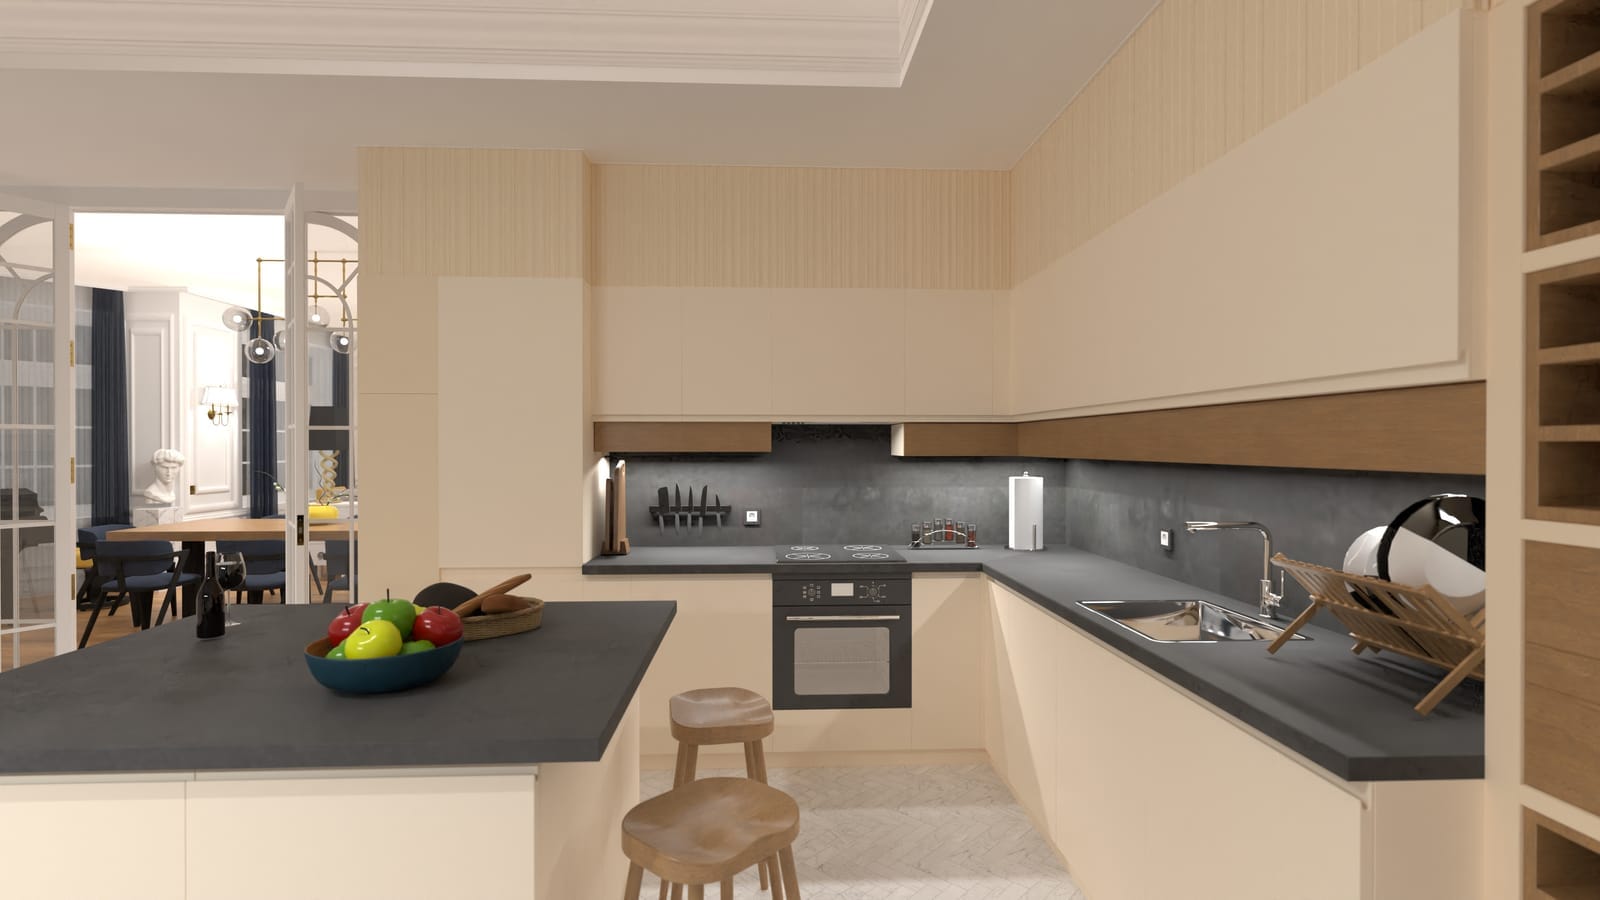 render 3d de cocina moderna minimalista en planner 5d